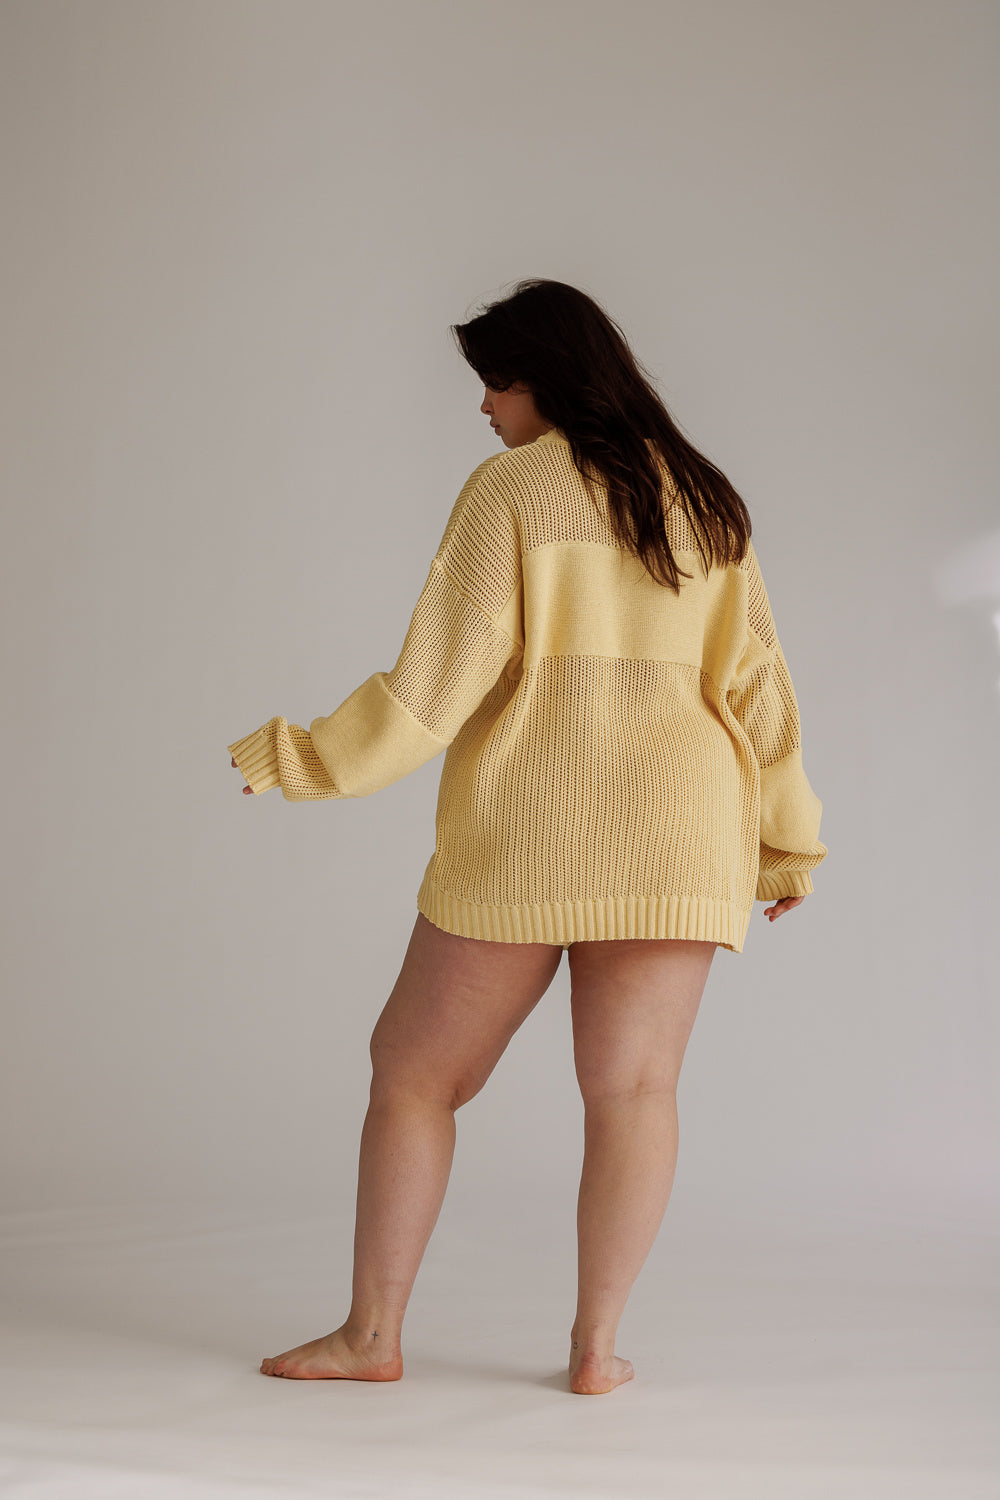 Knit Sweater Light Yellow